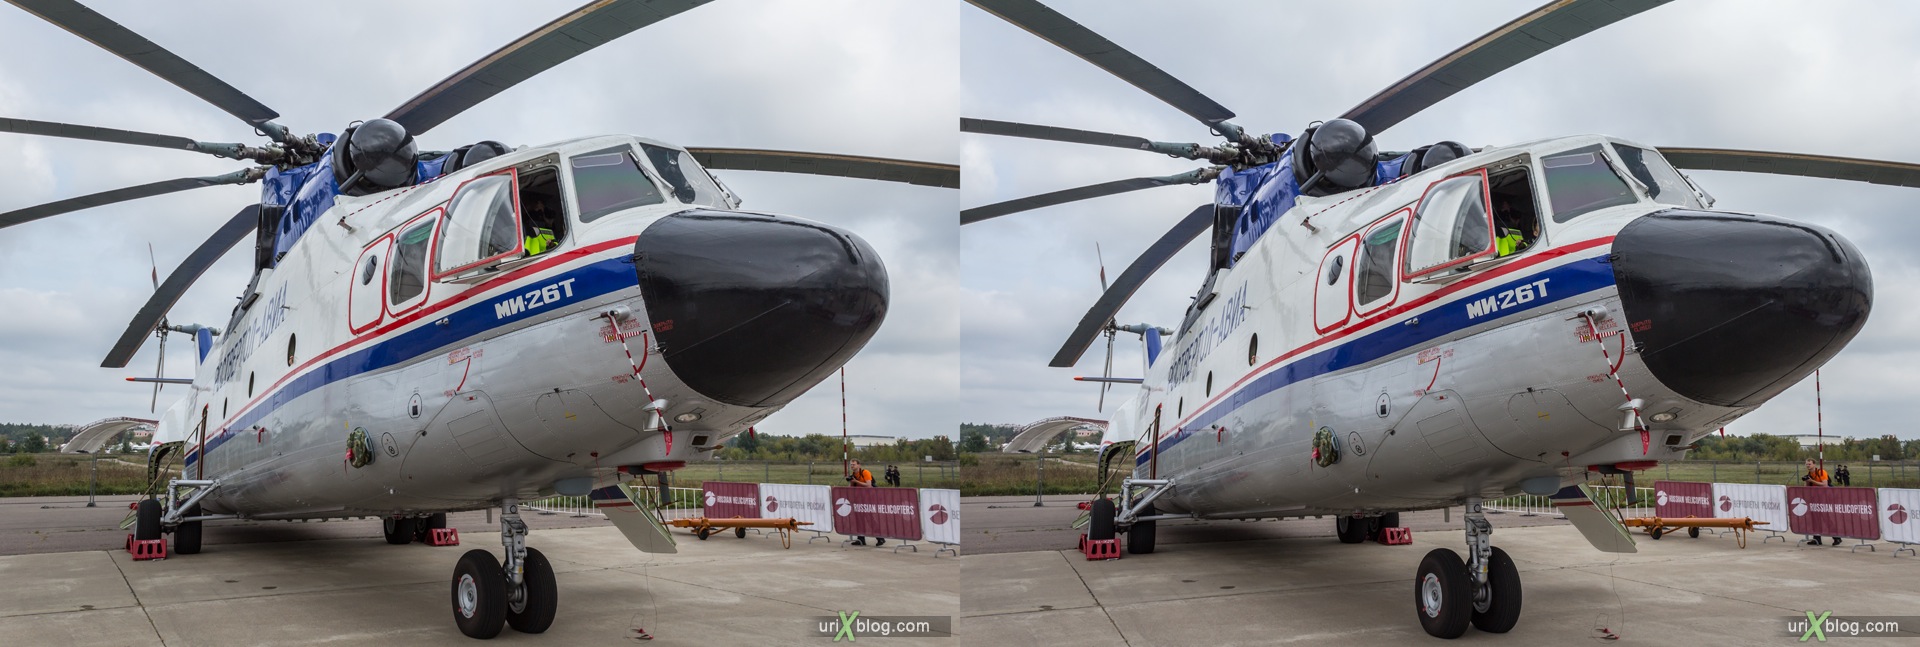 2013, Россия, Раменское, Жуковский, аэродром, Ми-26Т, вертолёт, МАКС, Международный Авиационно-космический Салон, 3D, перекрёстная стереопара, стерео, стереопара